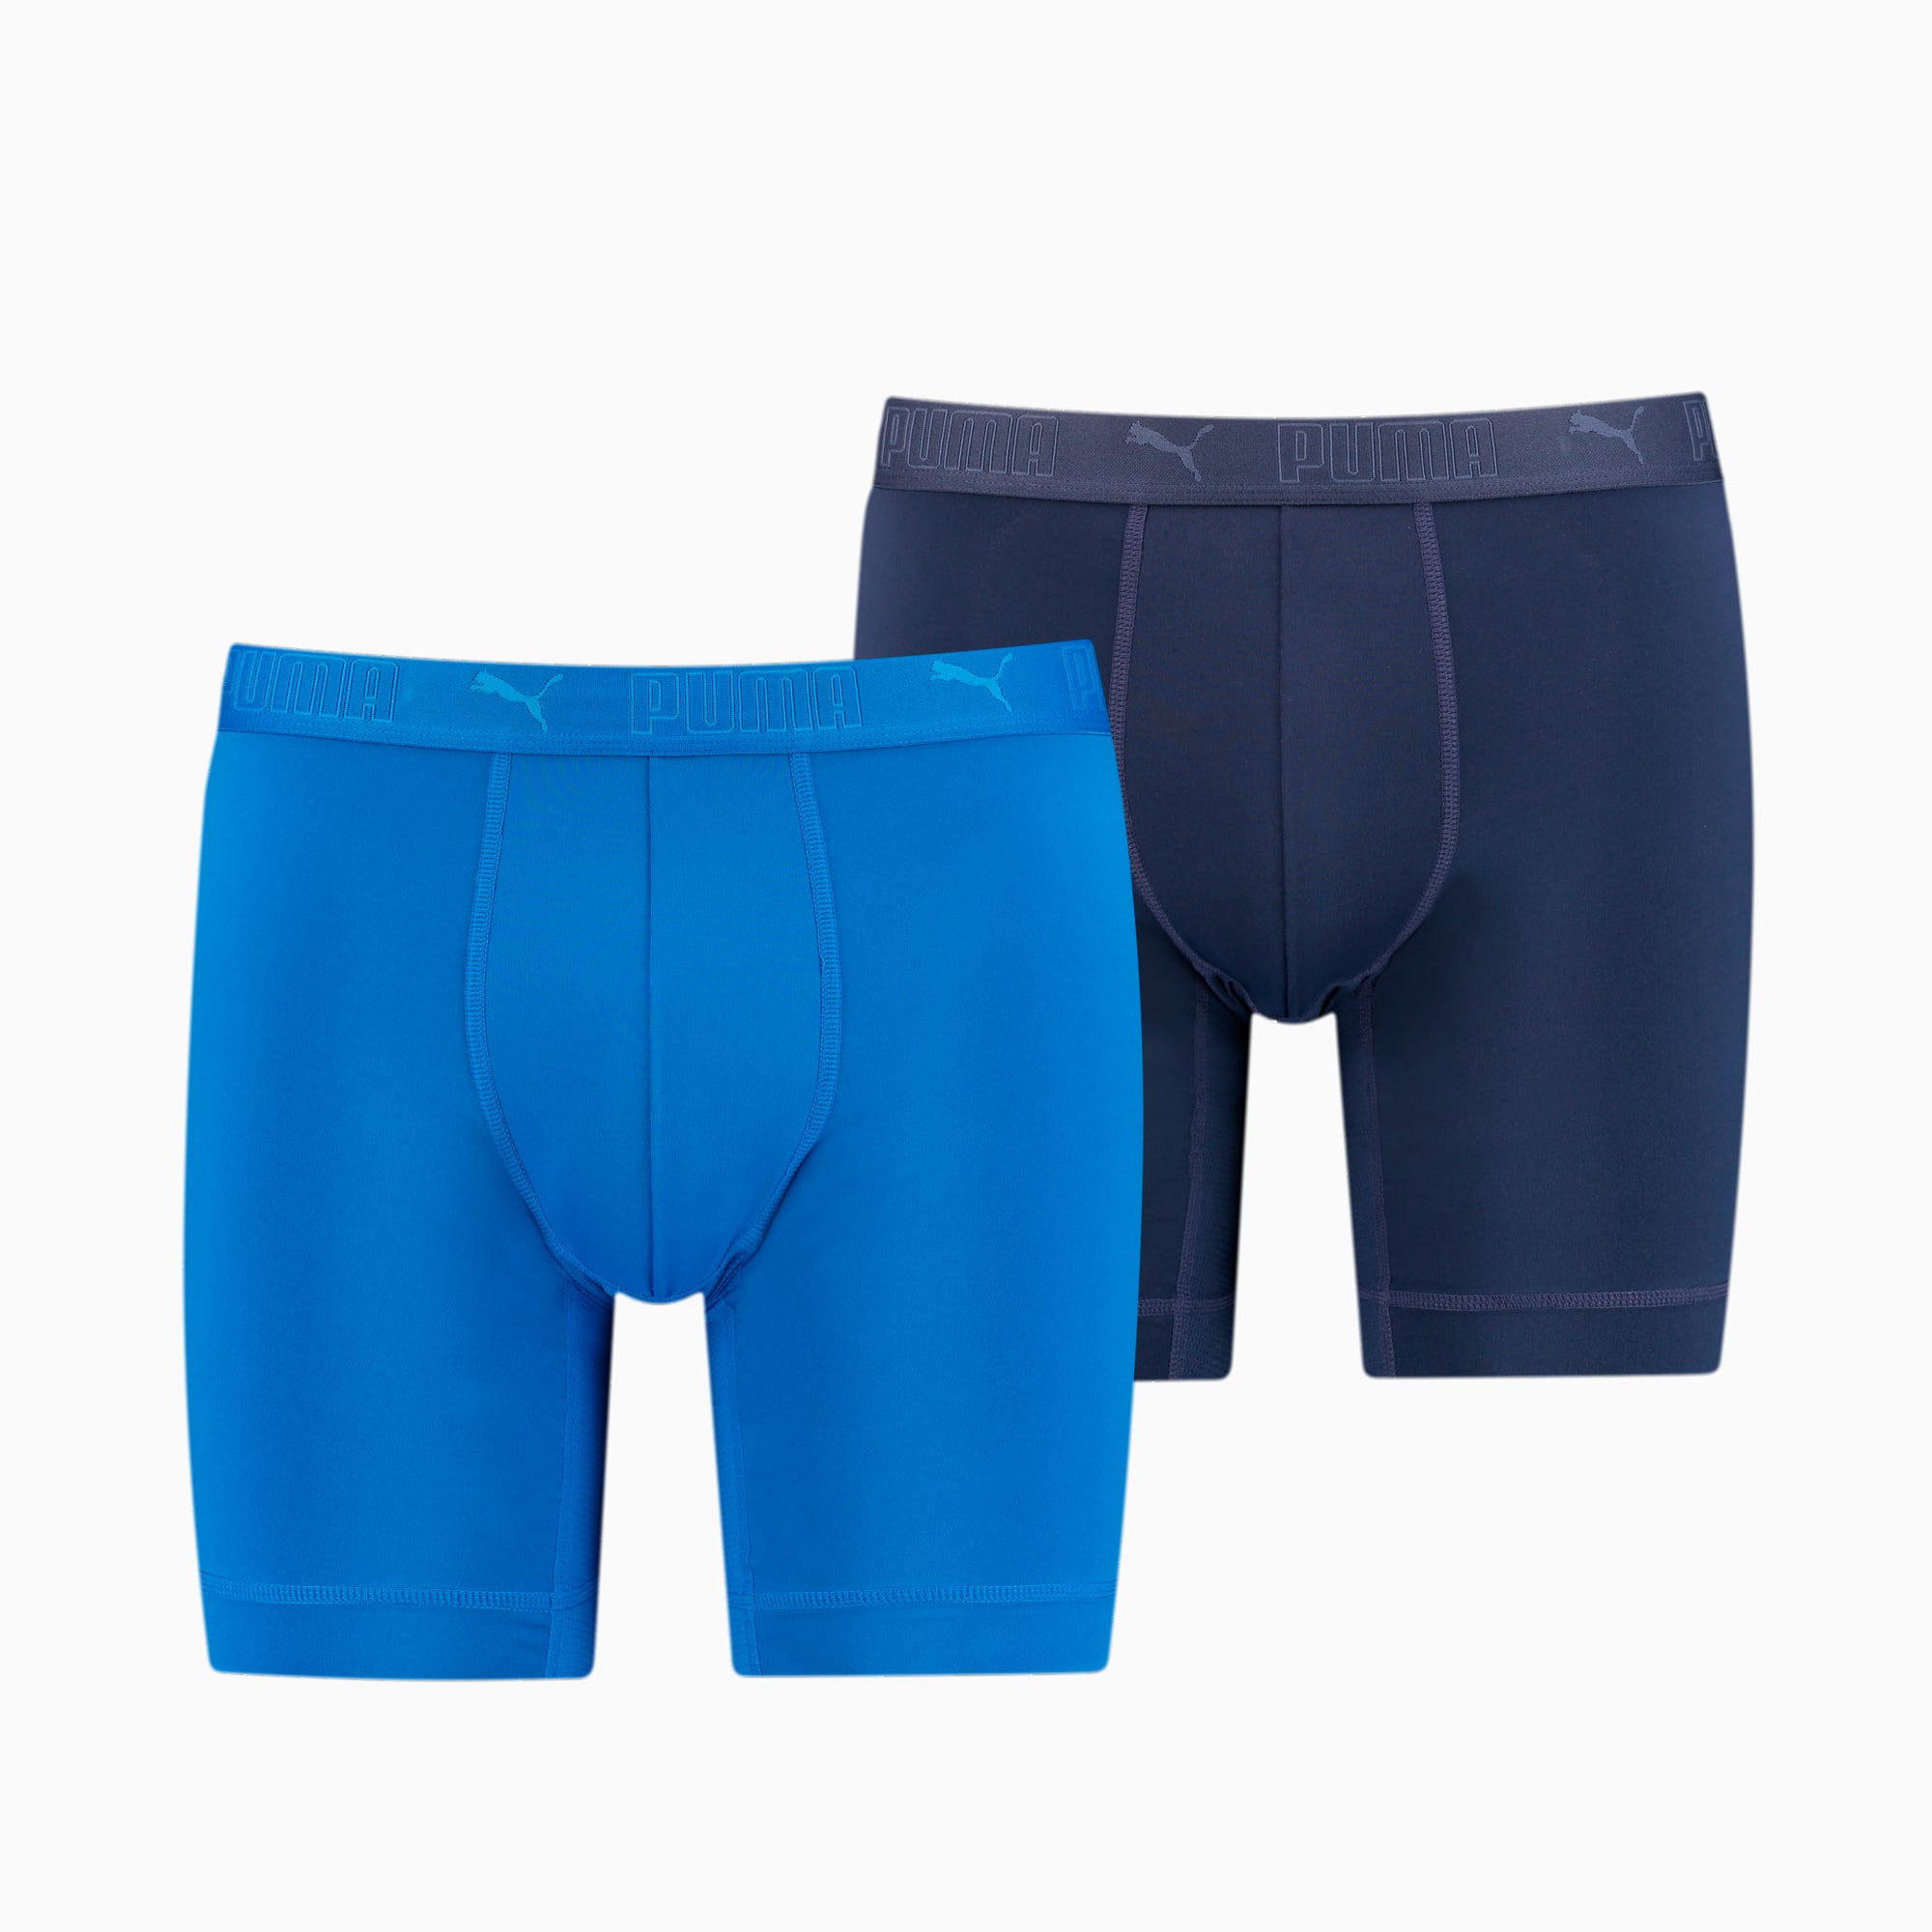 Herren Bekleidung Unterwäsche Boxershorts Jockey Trunks aus Mikrofaser im 2er-Pack in Blau für Herren 